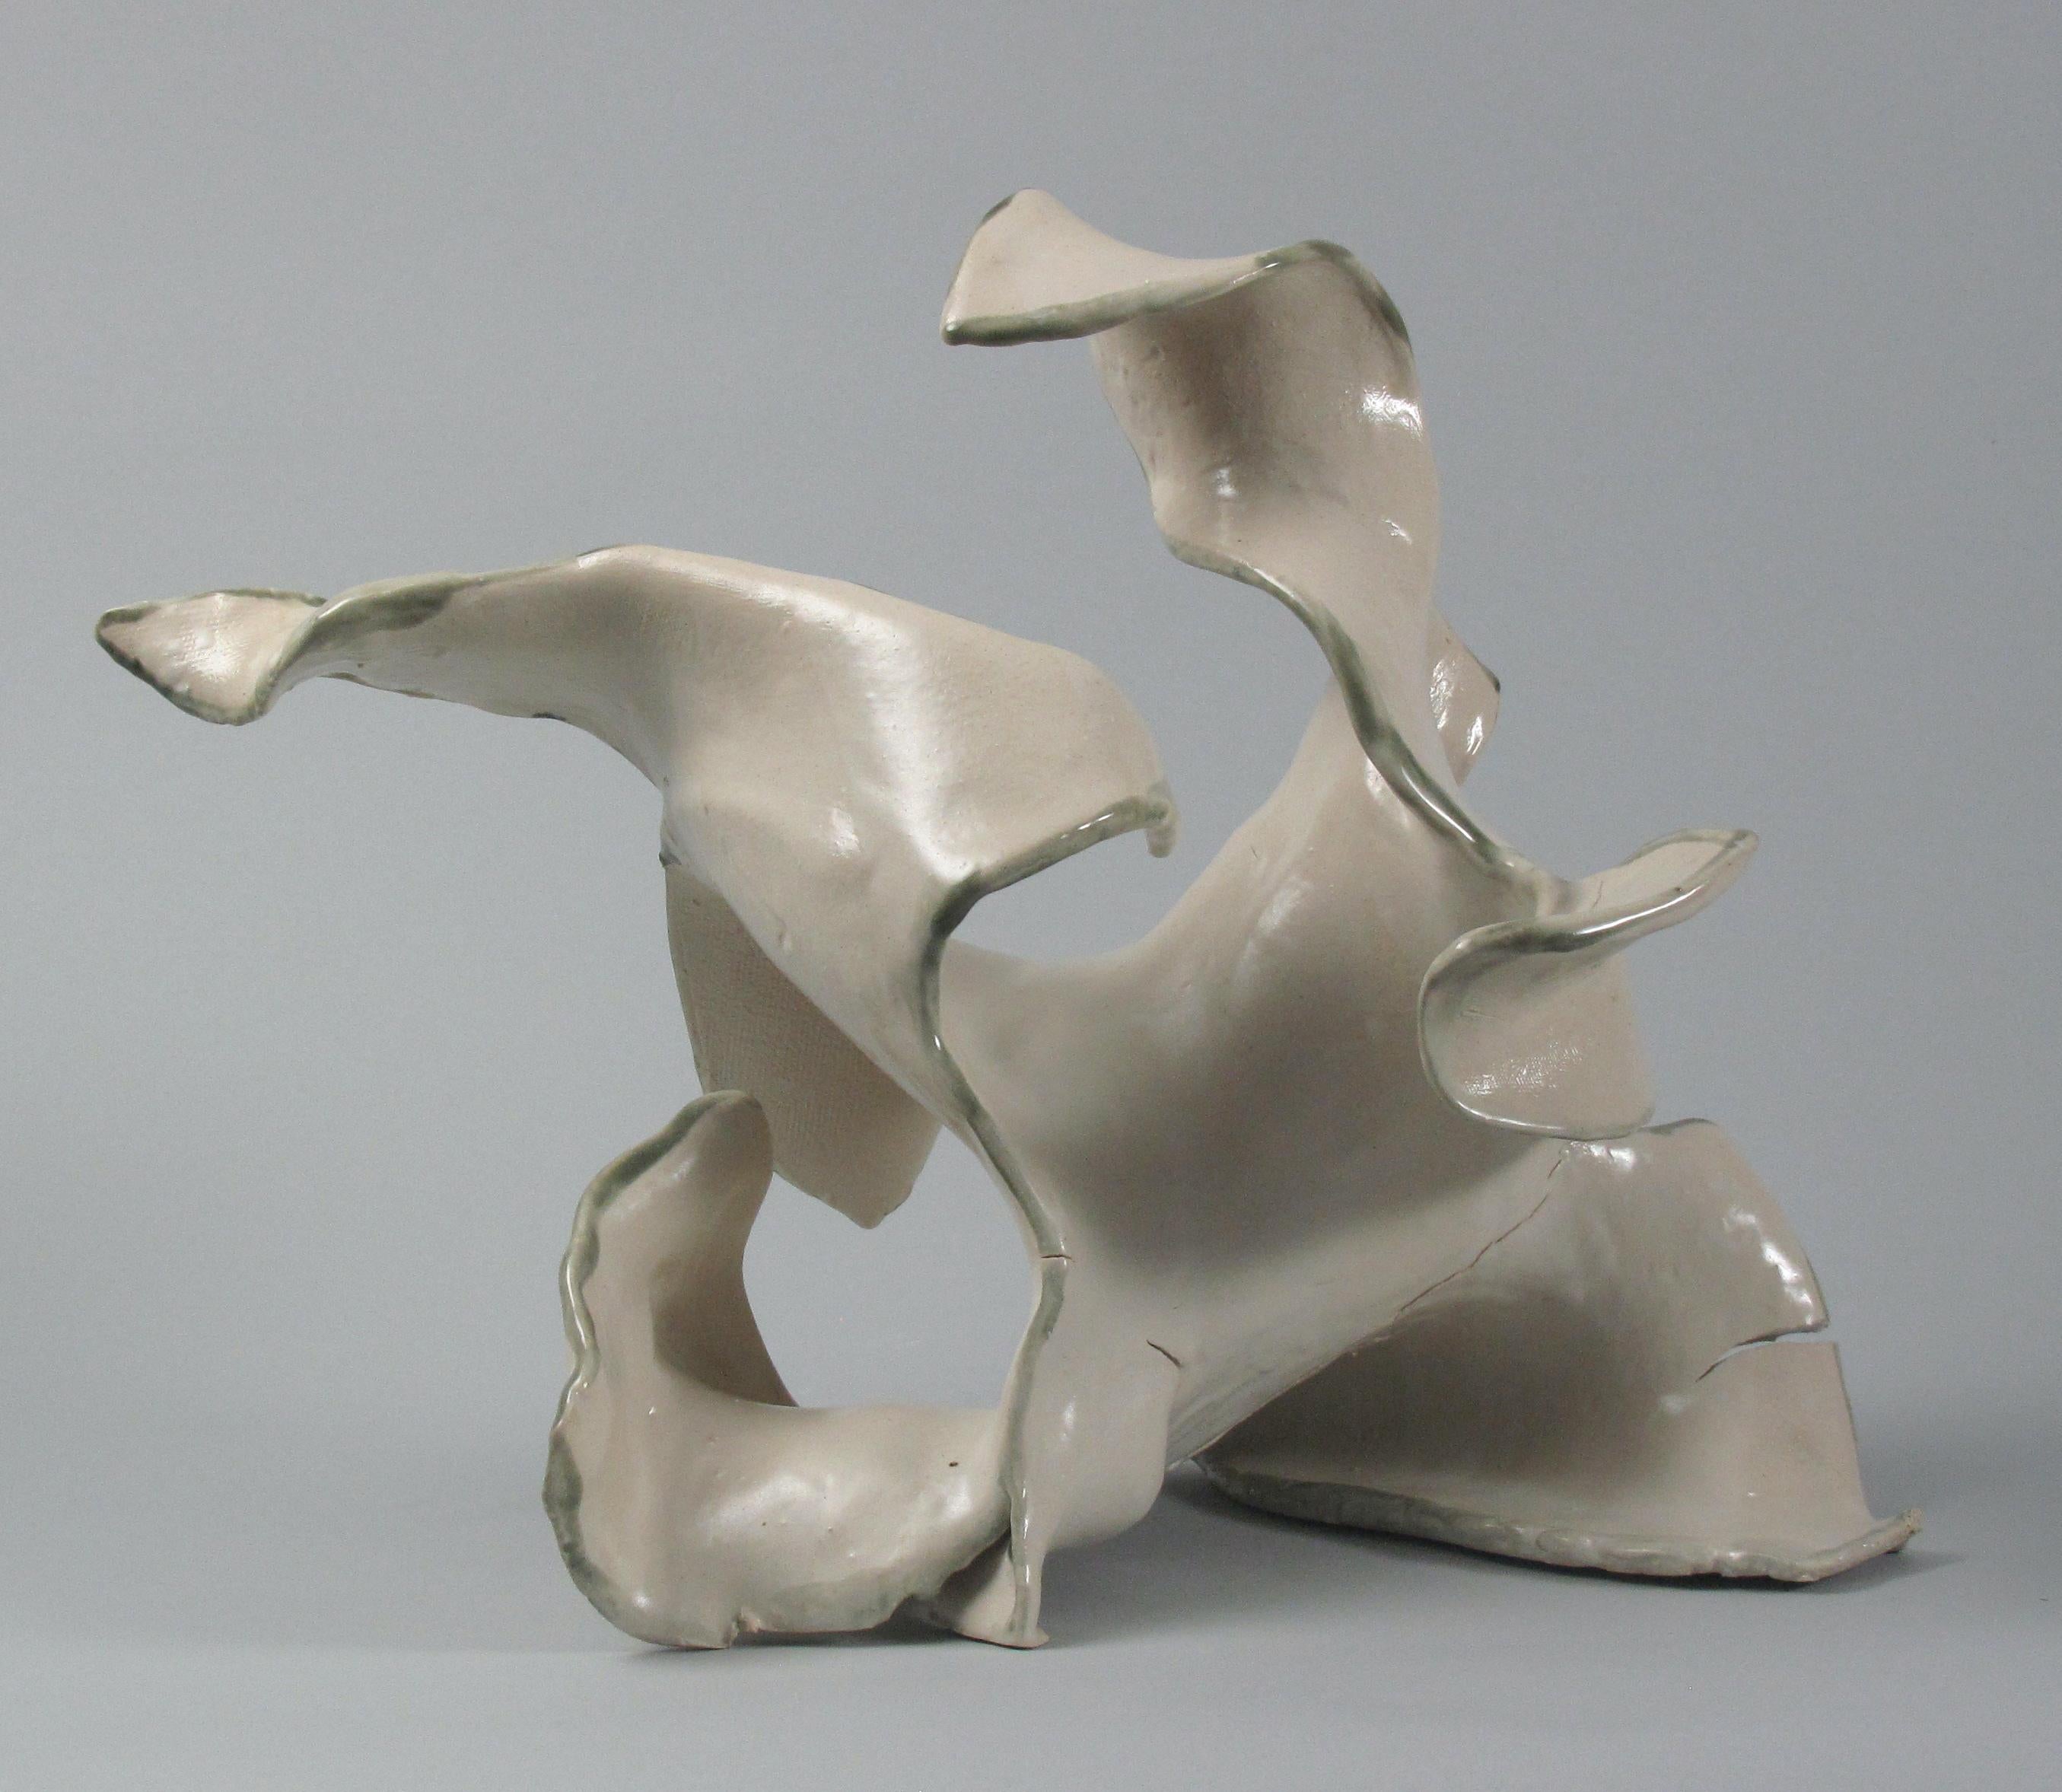 Sara Fine-Wilson Abstract Sculpture - "Fractured", gestural, ceramic, sculpture, white, cream, grey, teal, stoneware